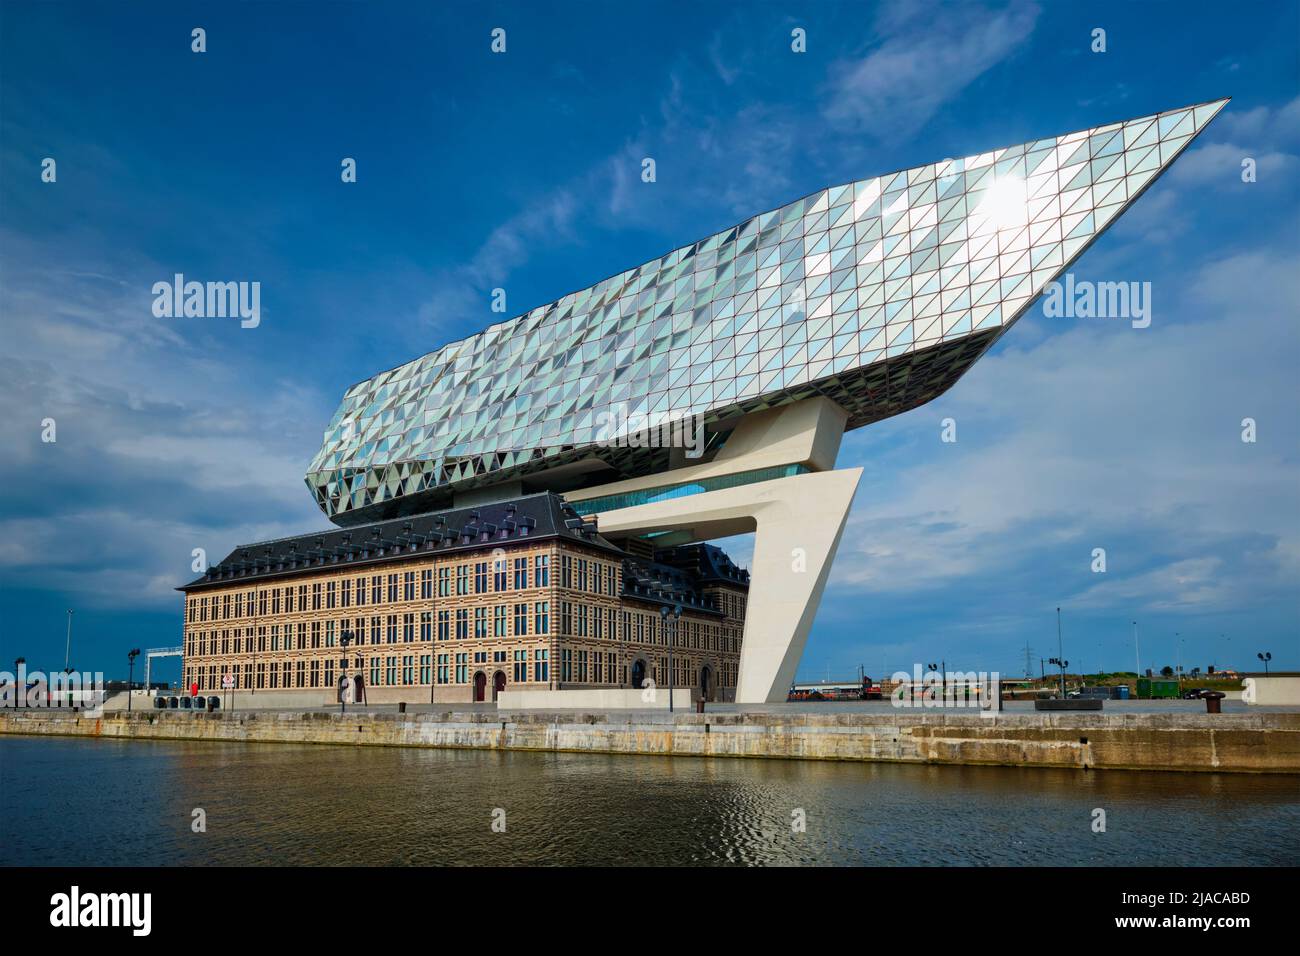 Casa de la autoridad portuaria (Porthuis) diseñada por los famosos arquitectos Zaha Hadid. Amberes, Bélgica Foto de stock